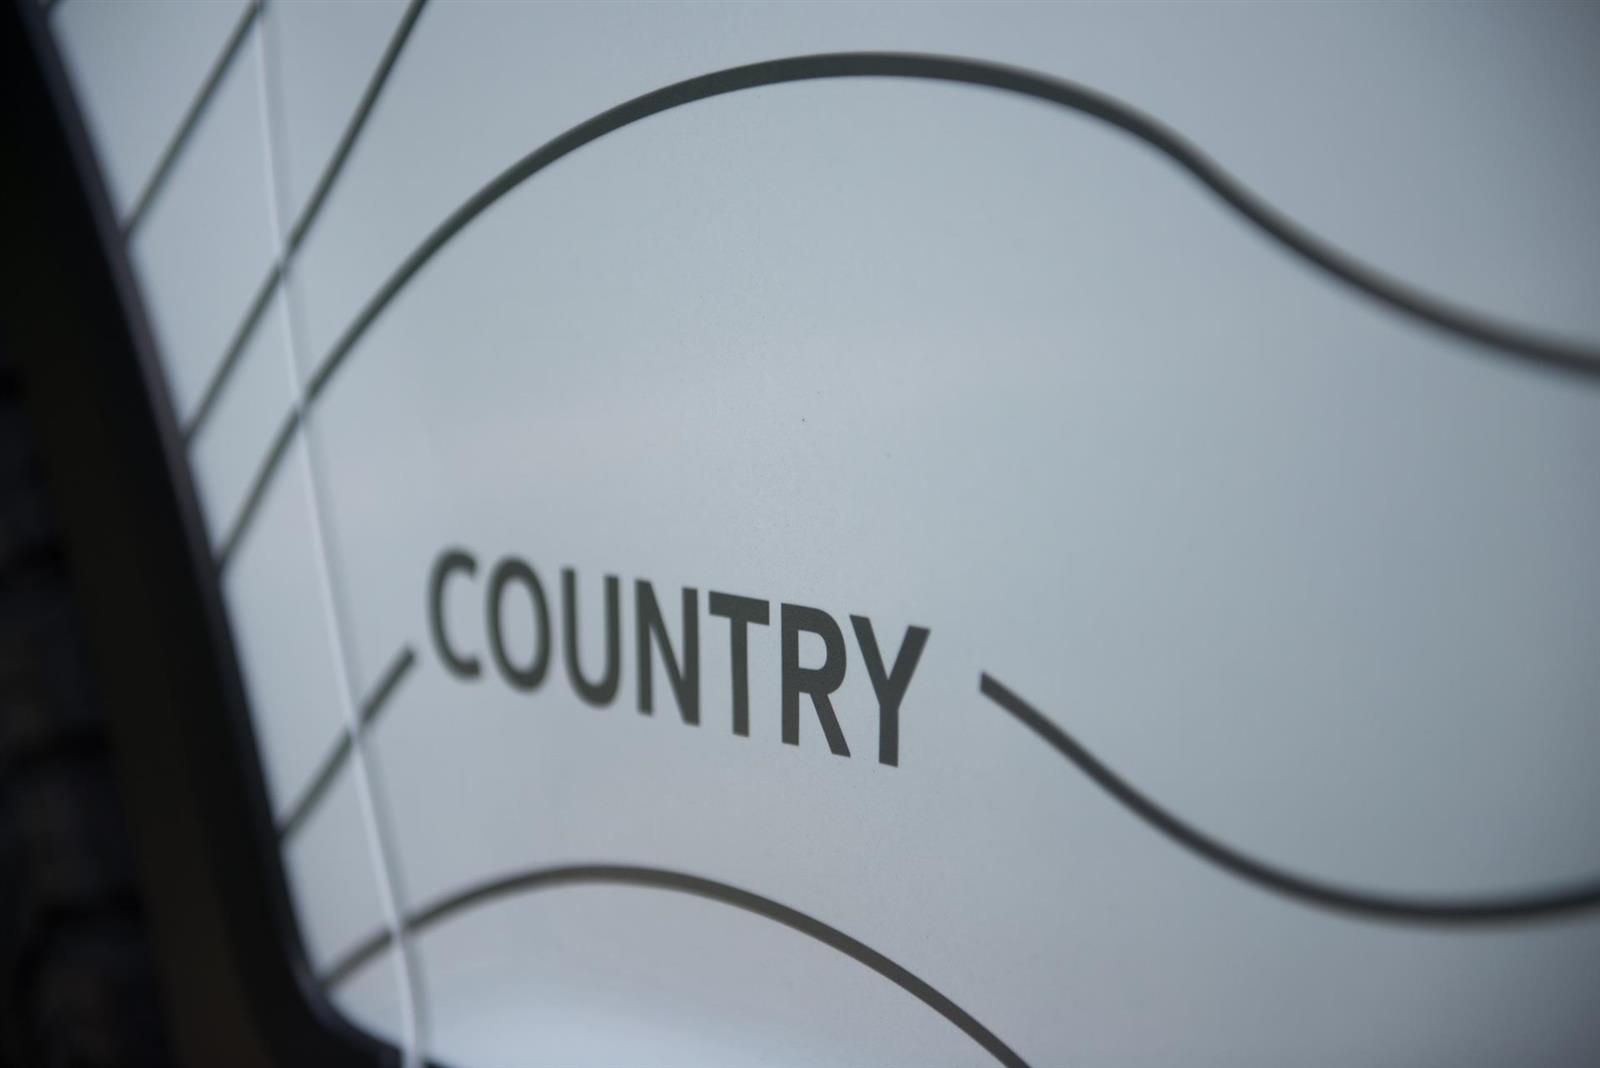 2017 Volkswagen Golf Alltrack Country Concept